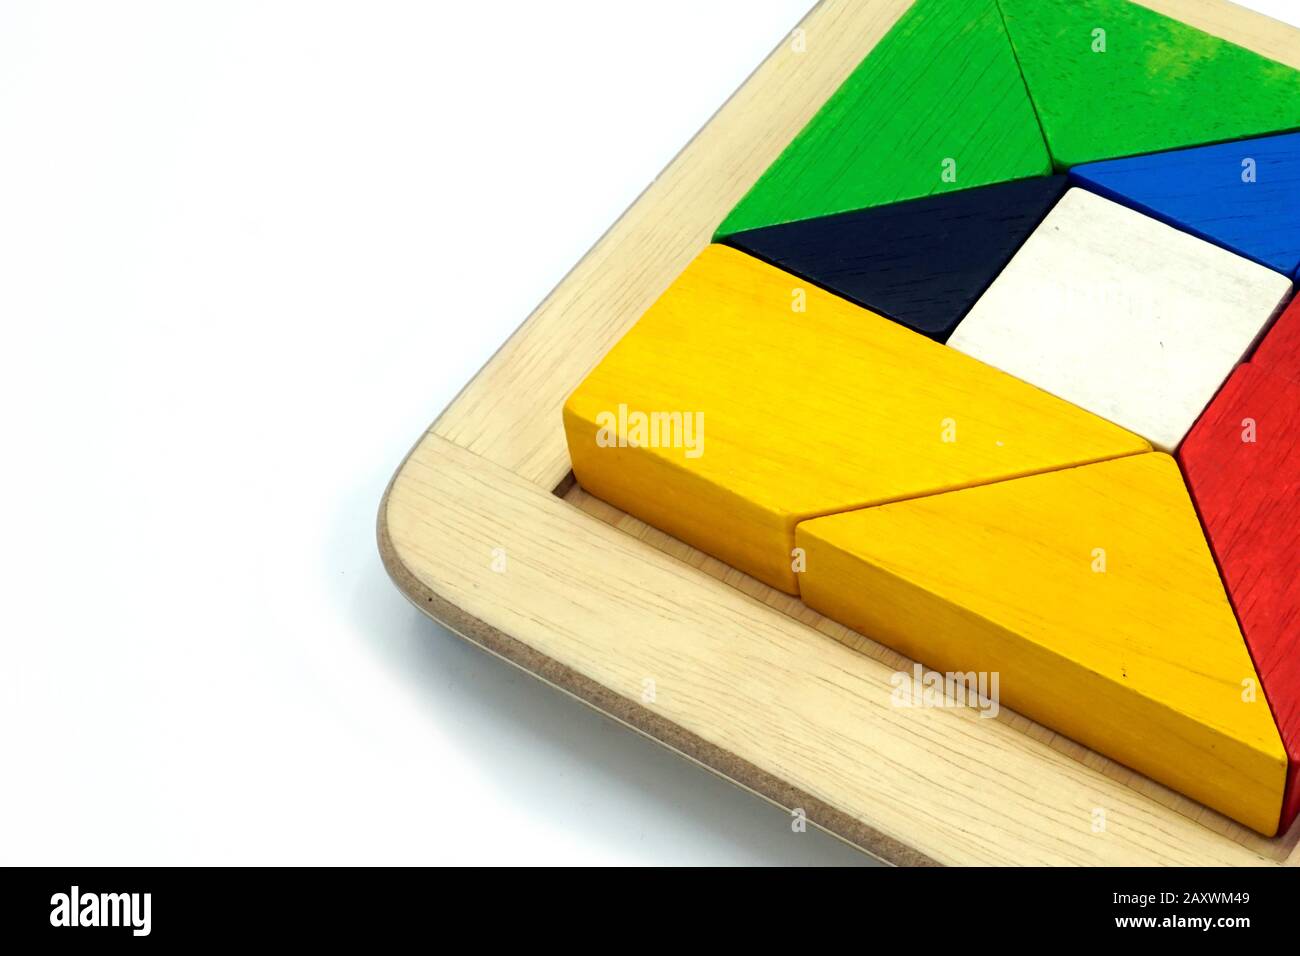 Tangram, juego de rompecabezas tradicional chino hecho de diferentes piezas  de madera de colores que se reúnen en una forma distinta, en una caja de  madera. Aislado encendido Fotografía de stock -